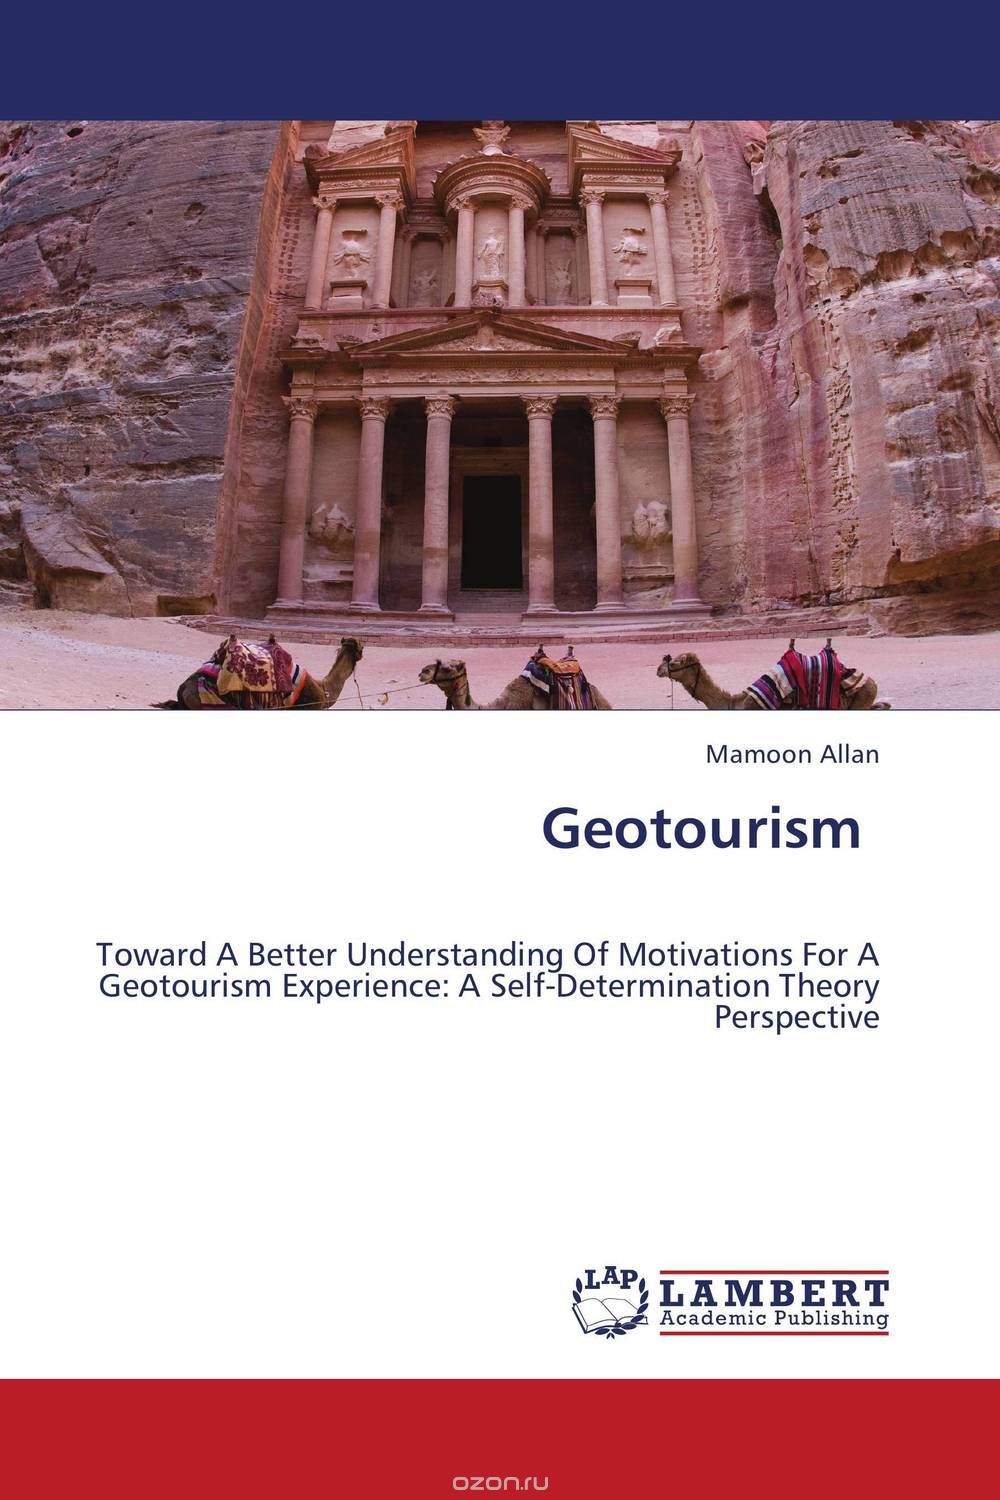 Скачать книгу "Geotourism"